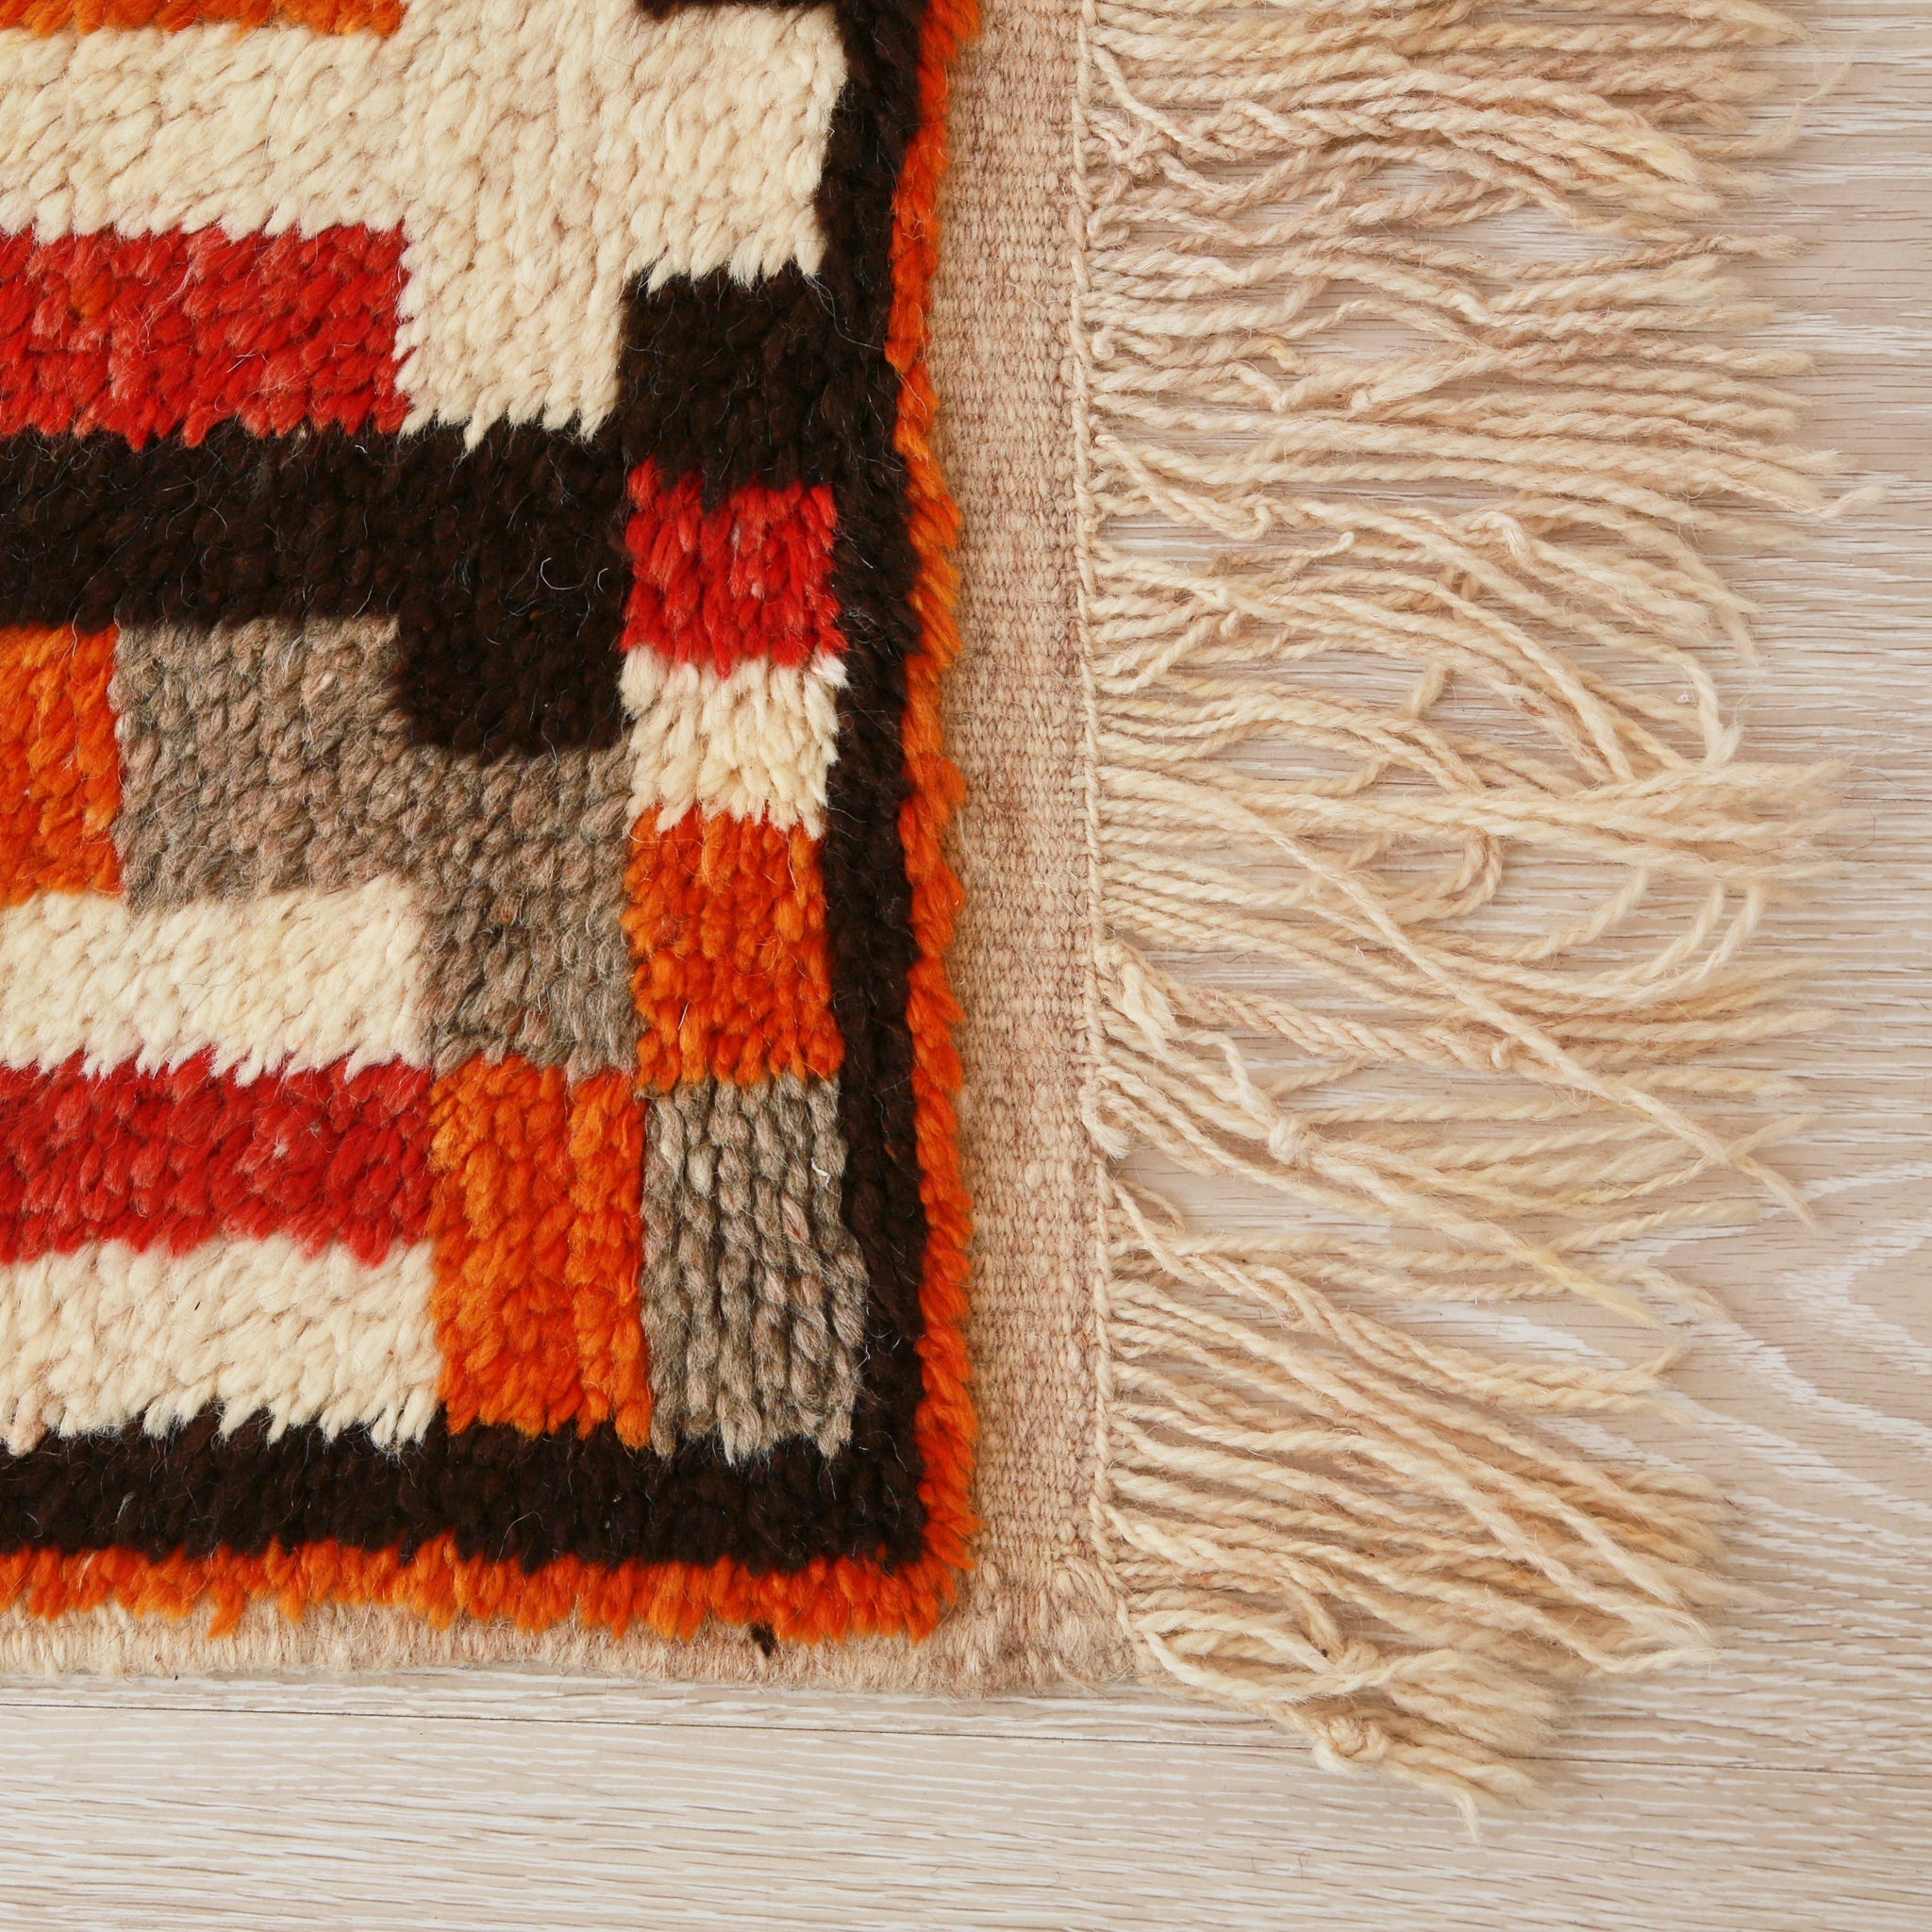 angolo di un tappeto stile azilal con quadrati e rettangoli di diversi colori, come diverse sfuture di rosso, arancione e grigio, con un lunga frangia sottile bianca